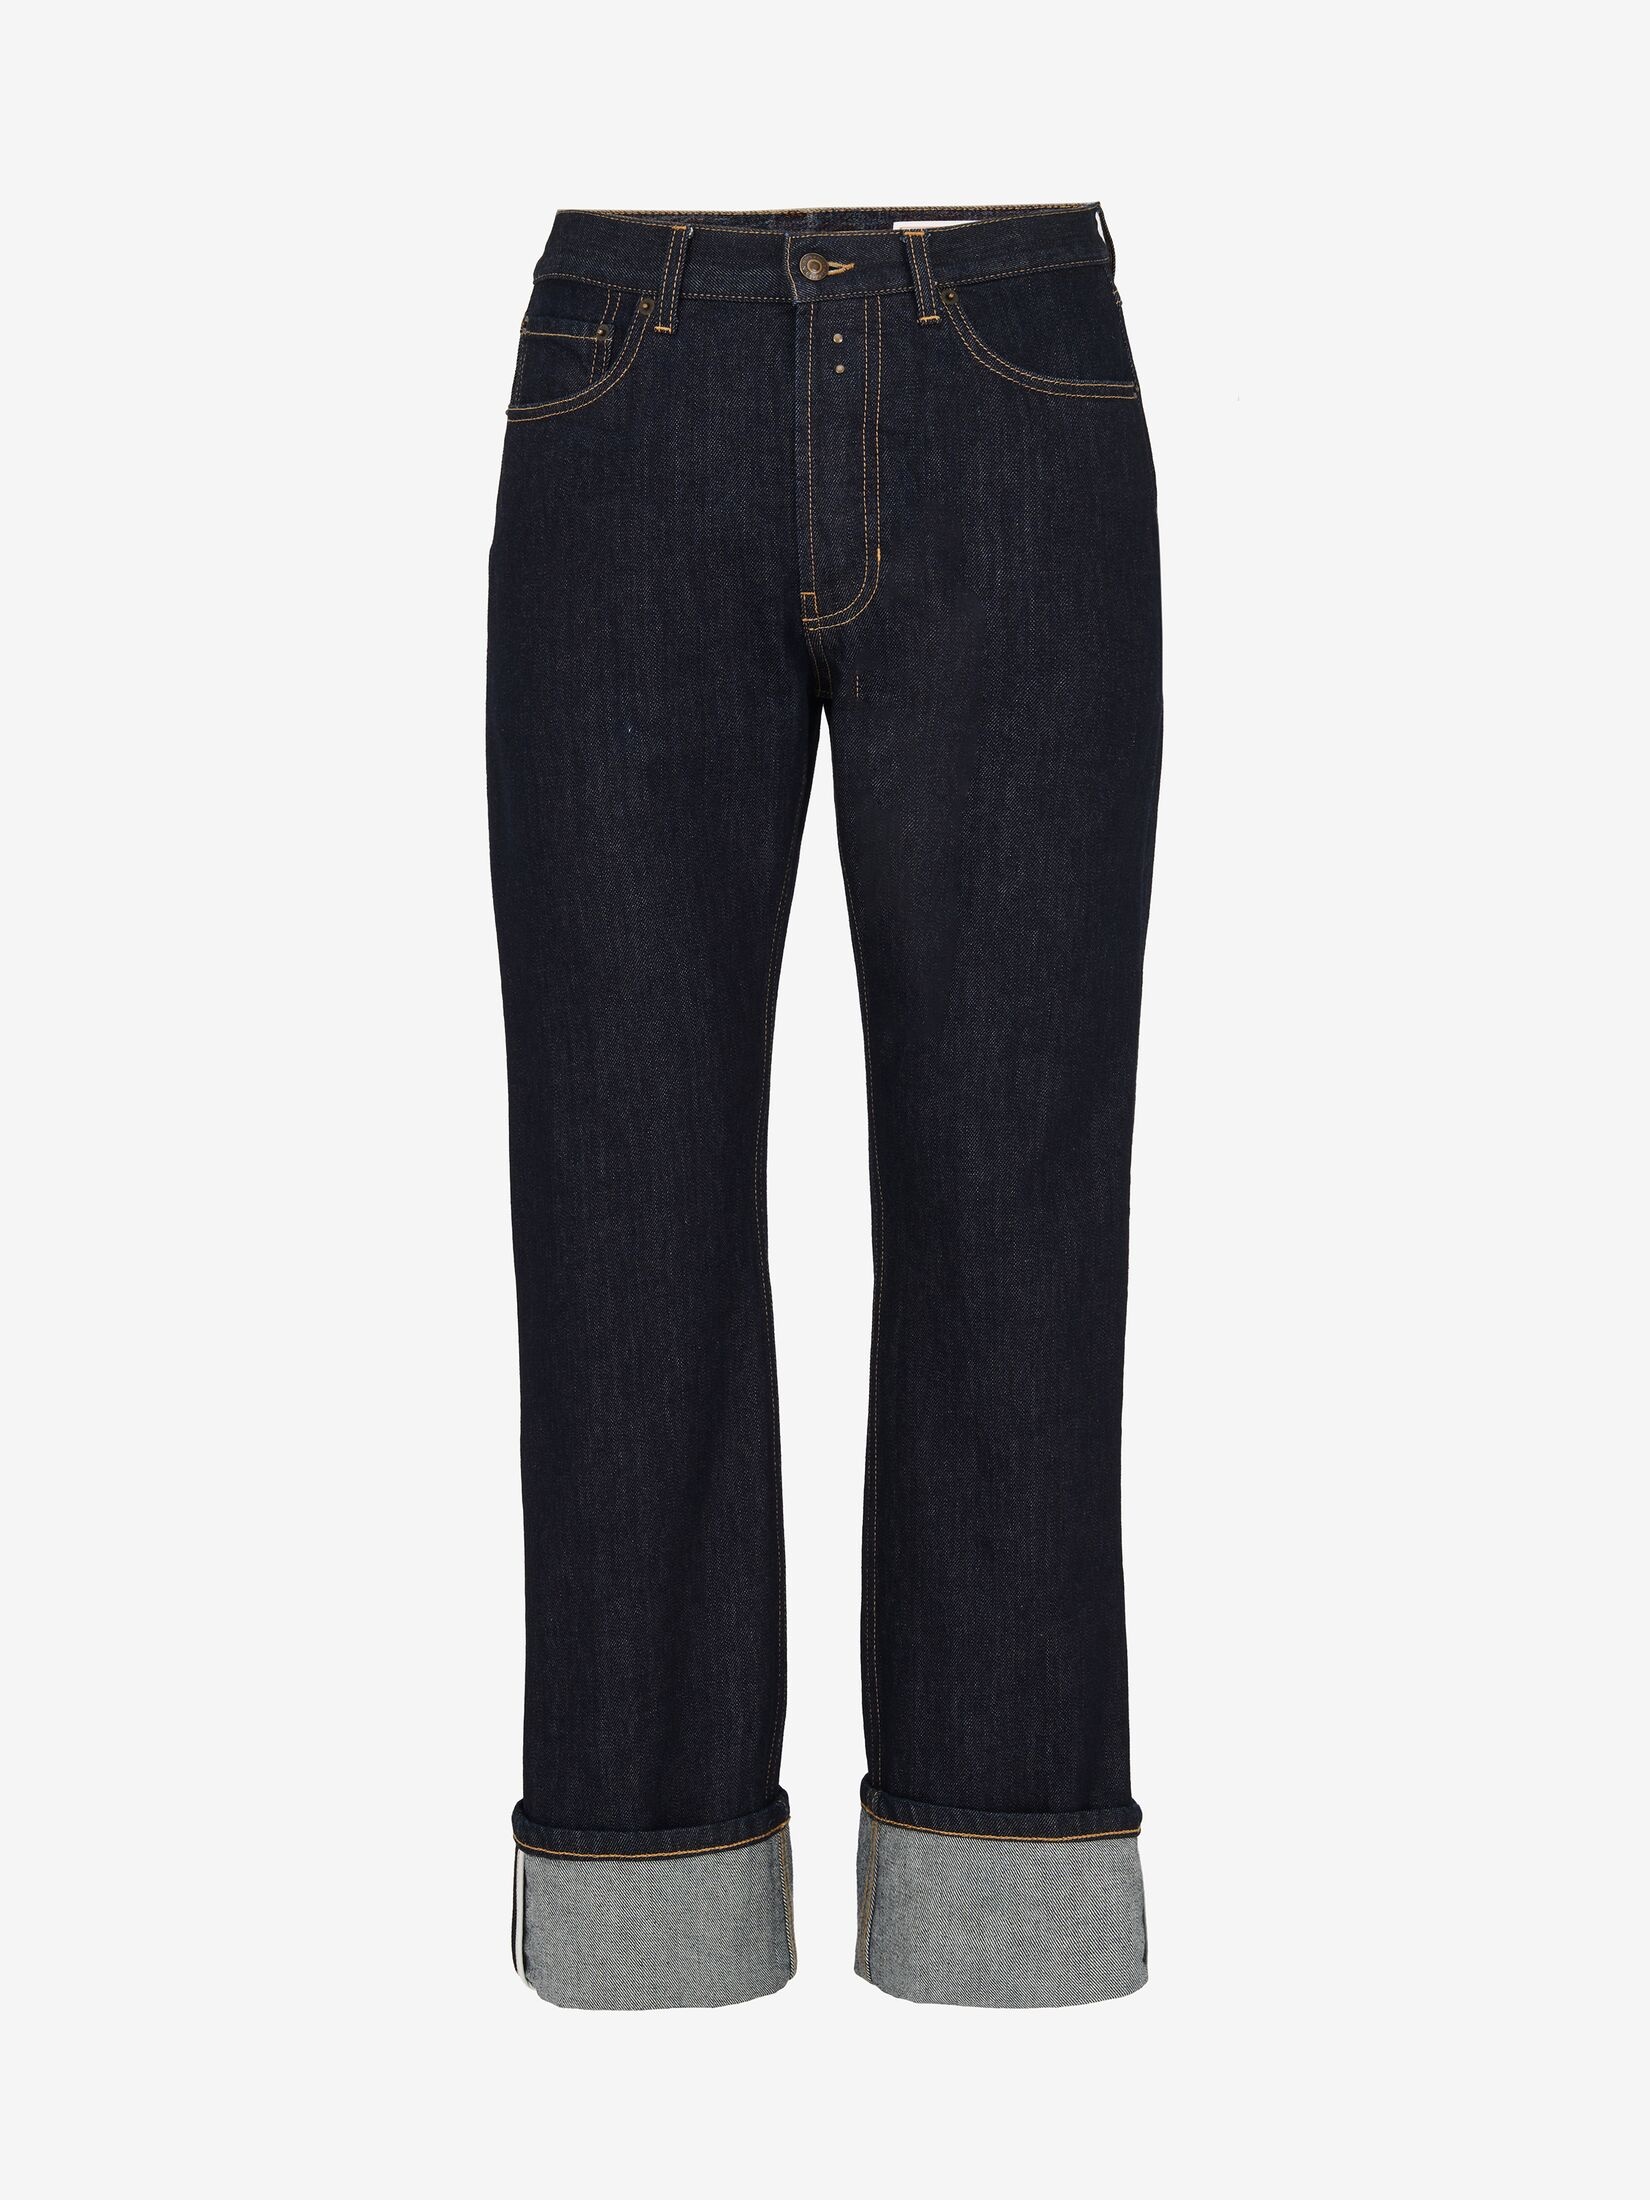 Men's Turn-up Jeans in Indigo - 1